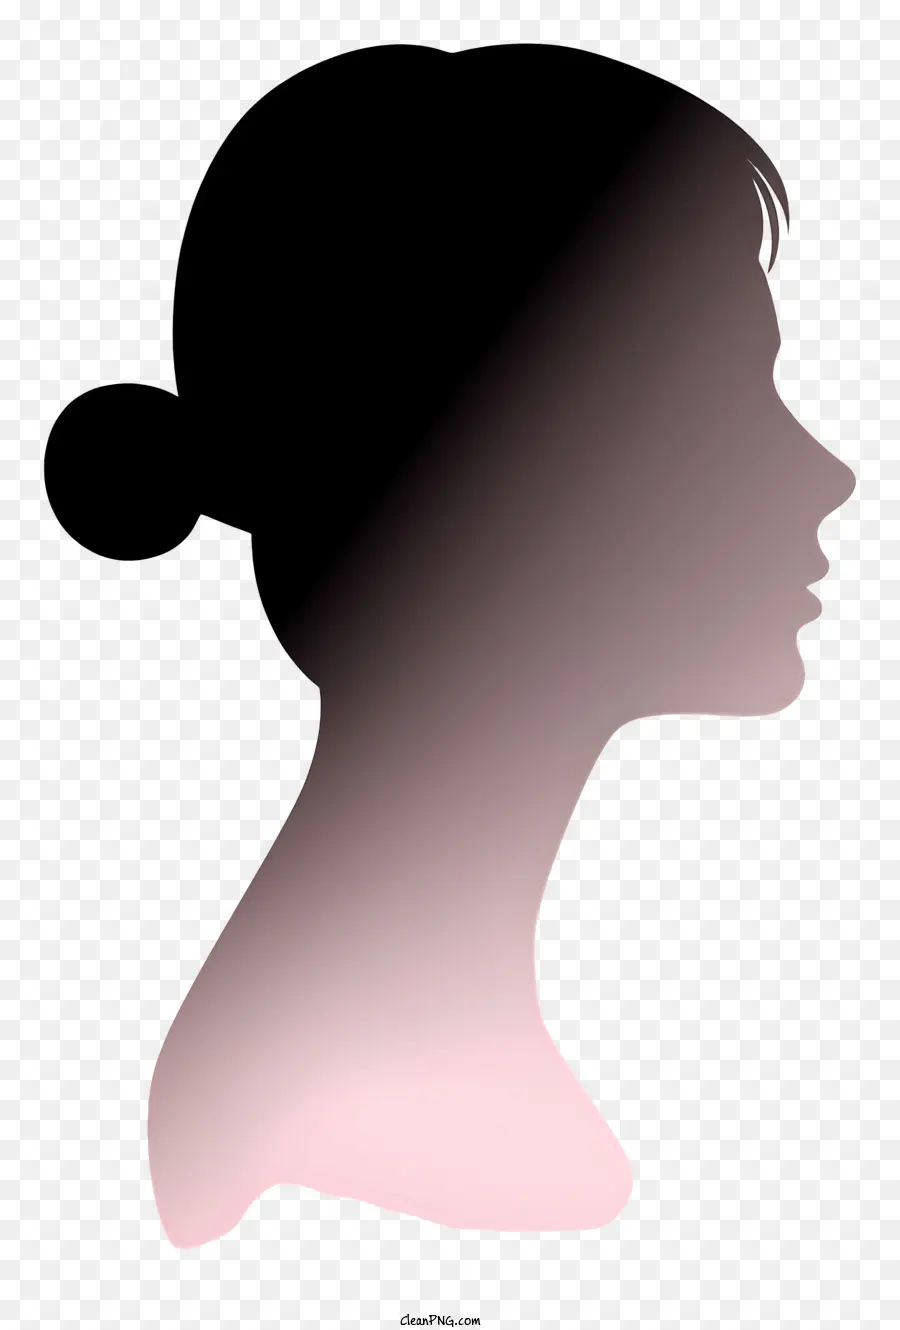 Donne realistiche Faccia laterale Silhouette Profilo della donna Silhouette Pink Eyes - Profilo di silhouette di una donna con gli occhi chiusi